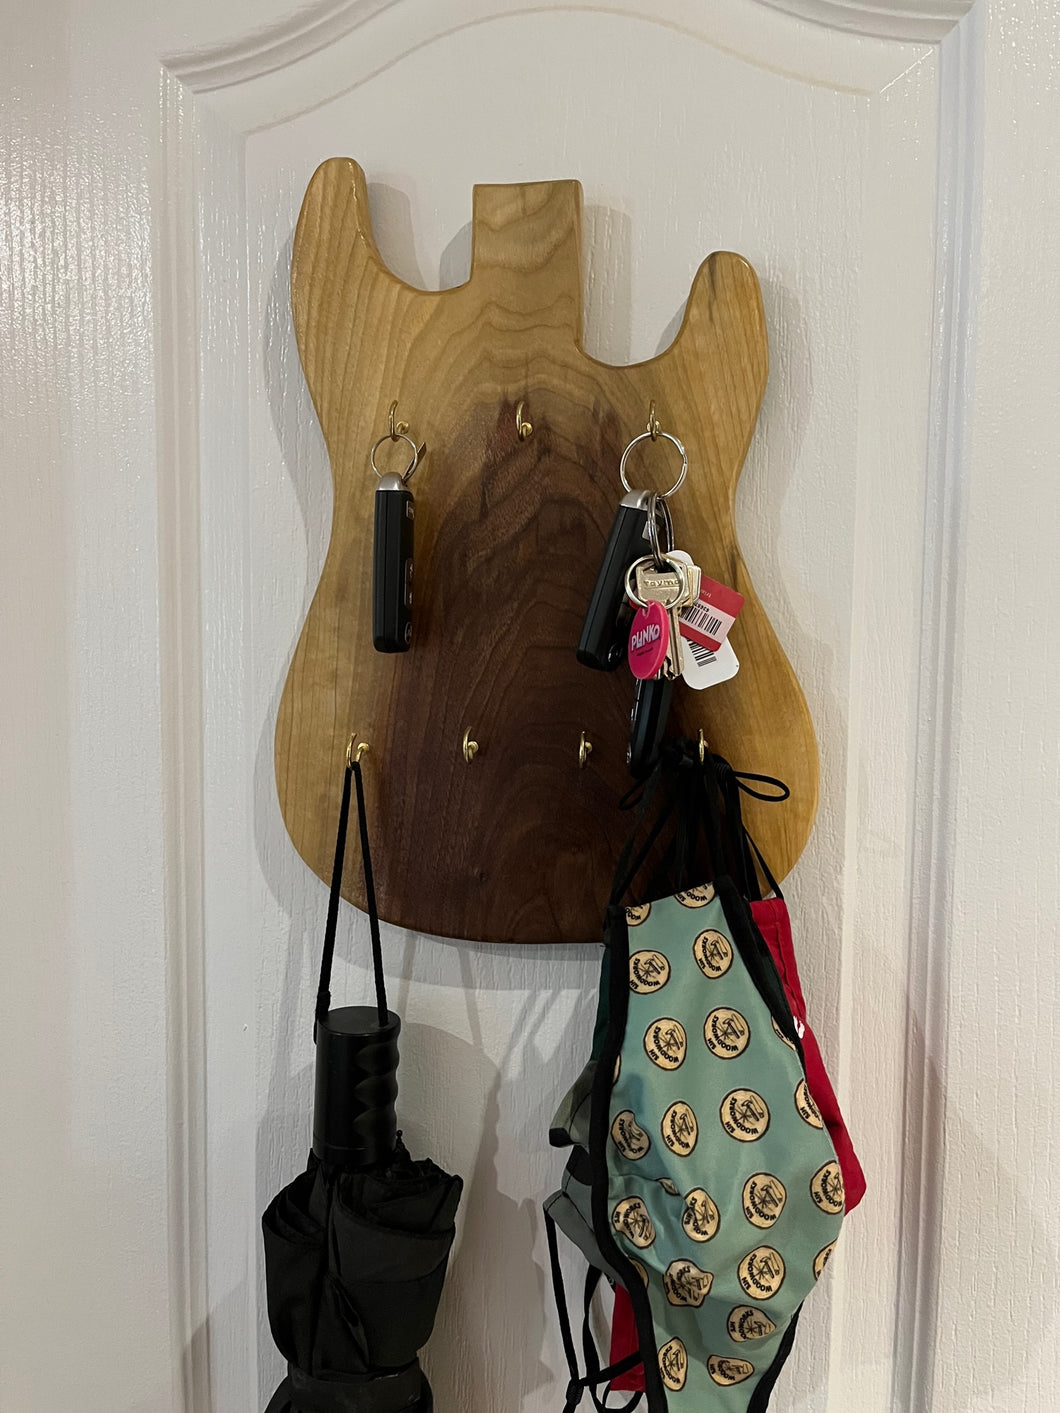 Unique Guitar Shaped Key/Umbrella Hanger